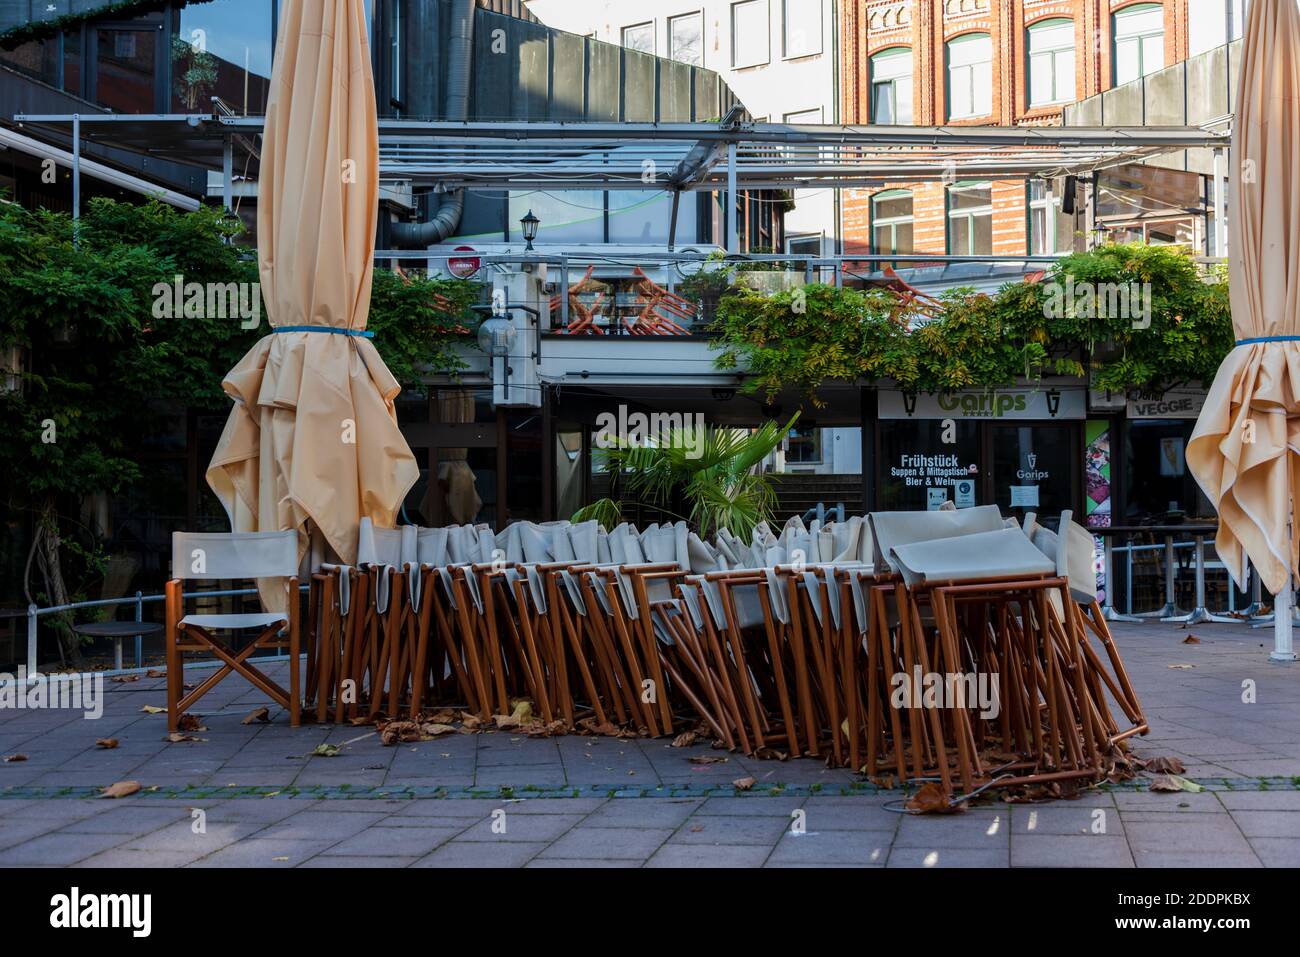 Der Alte Markt in Kiel in gastronomischer Hotspot, während des Corona-lockdown menschenleer Foto Stock